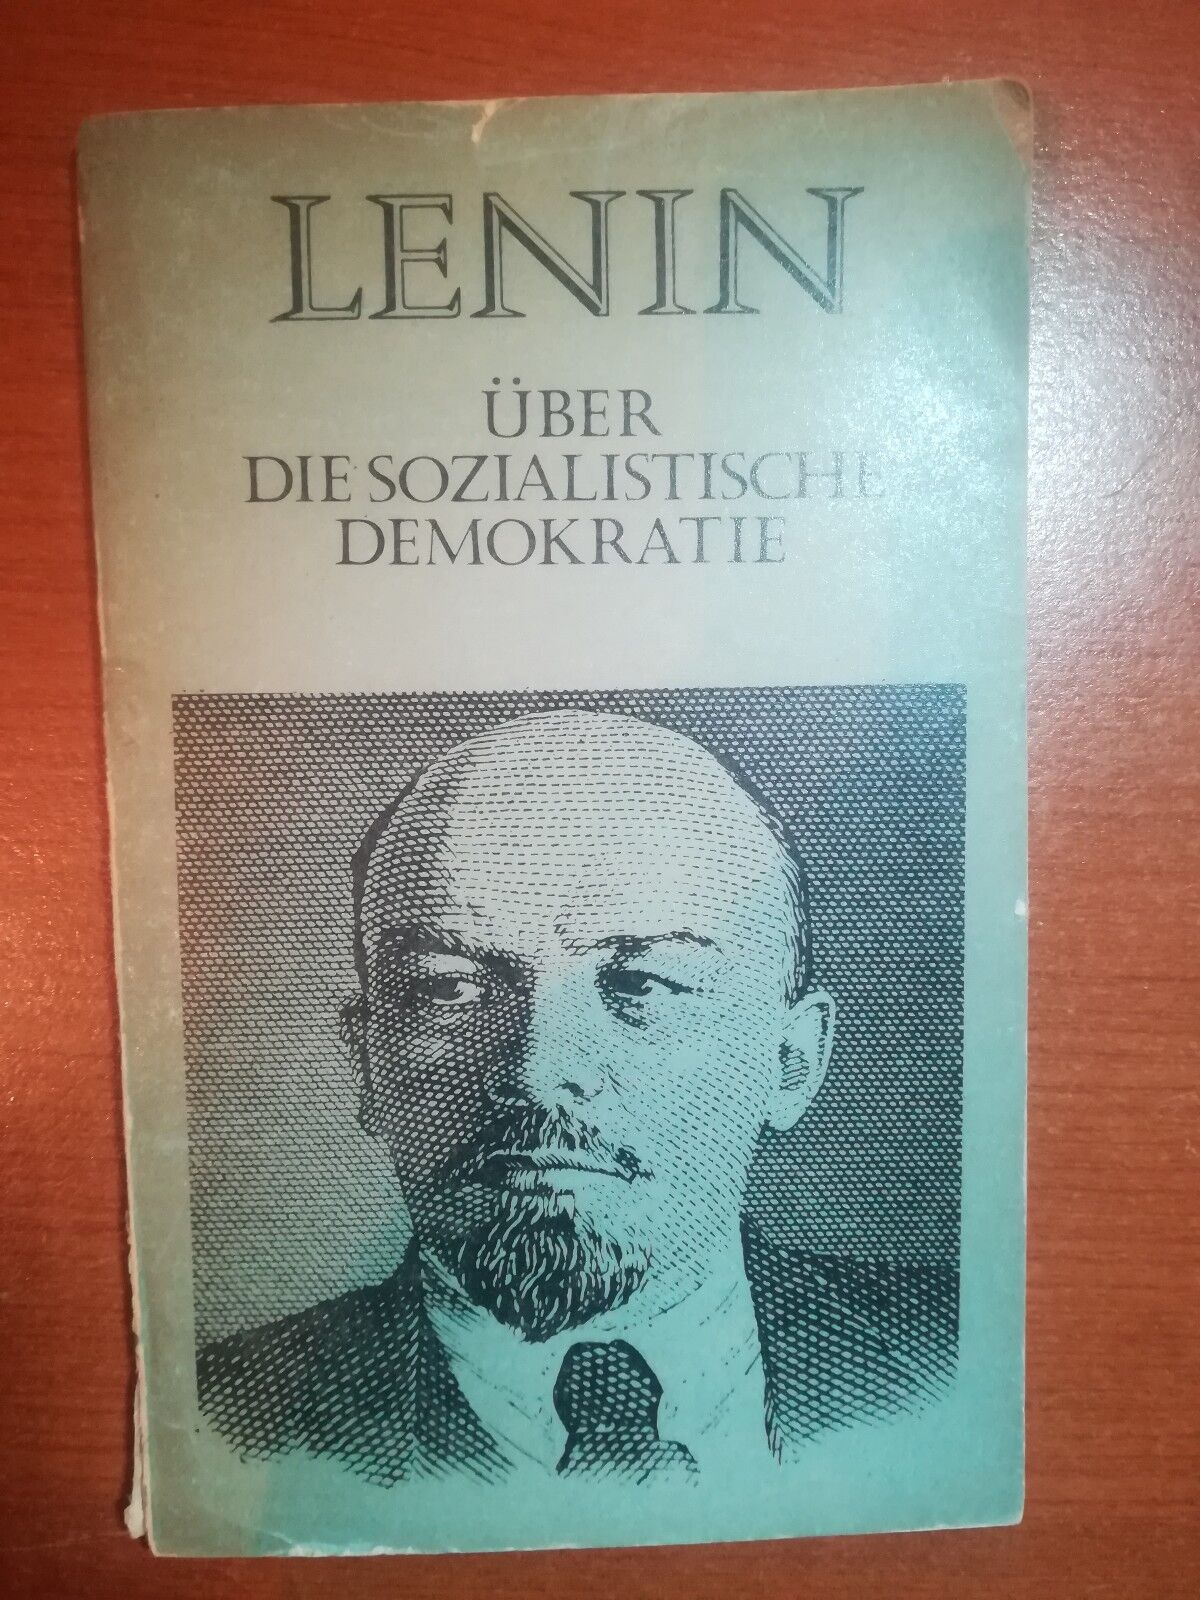 Uber die sozialistische demokratie - Lenin - Moskau - 1978 - M